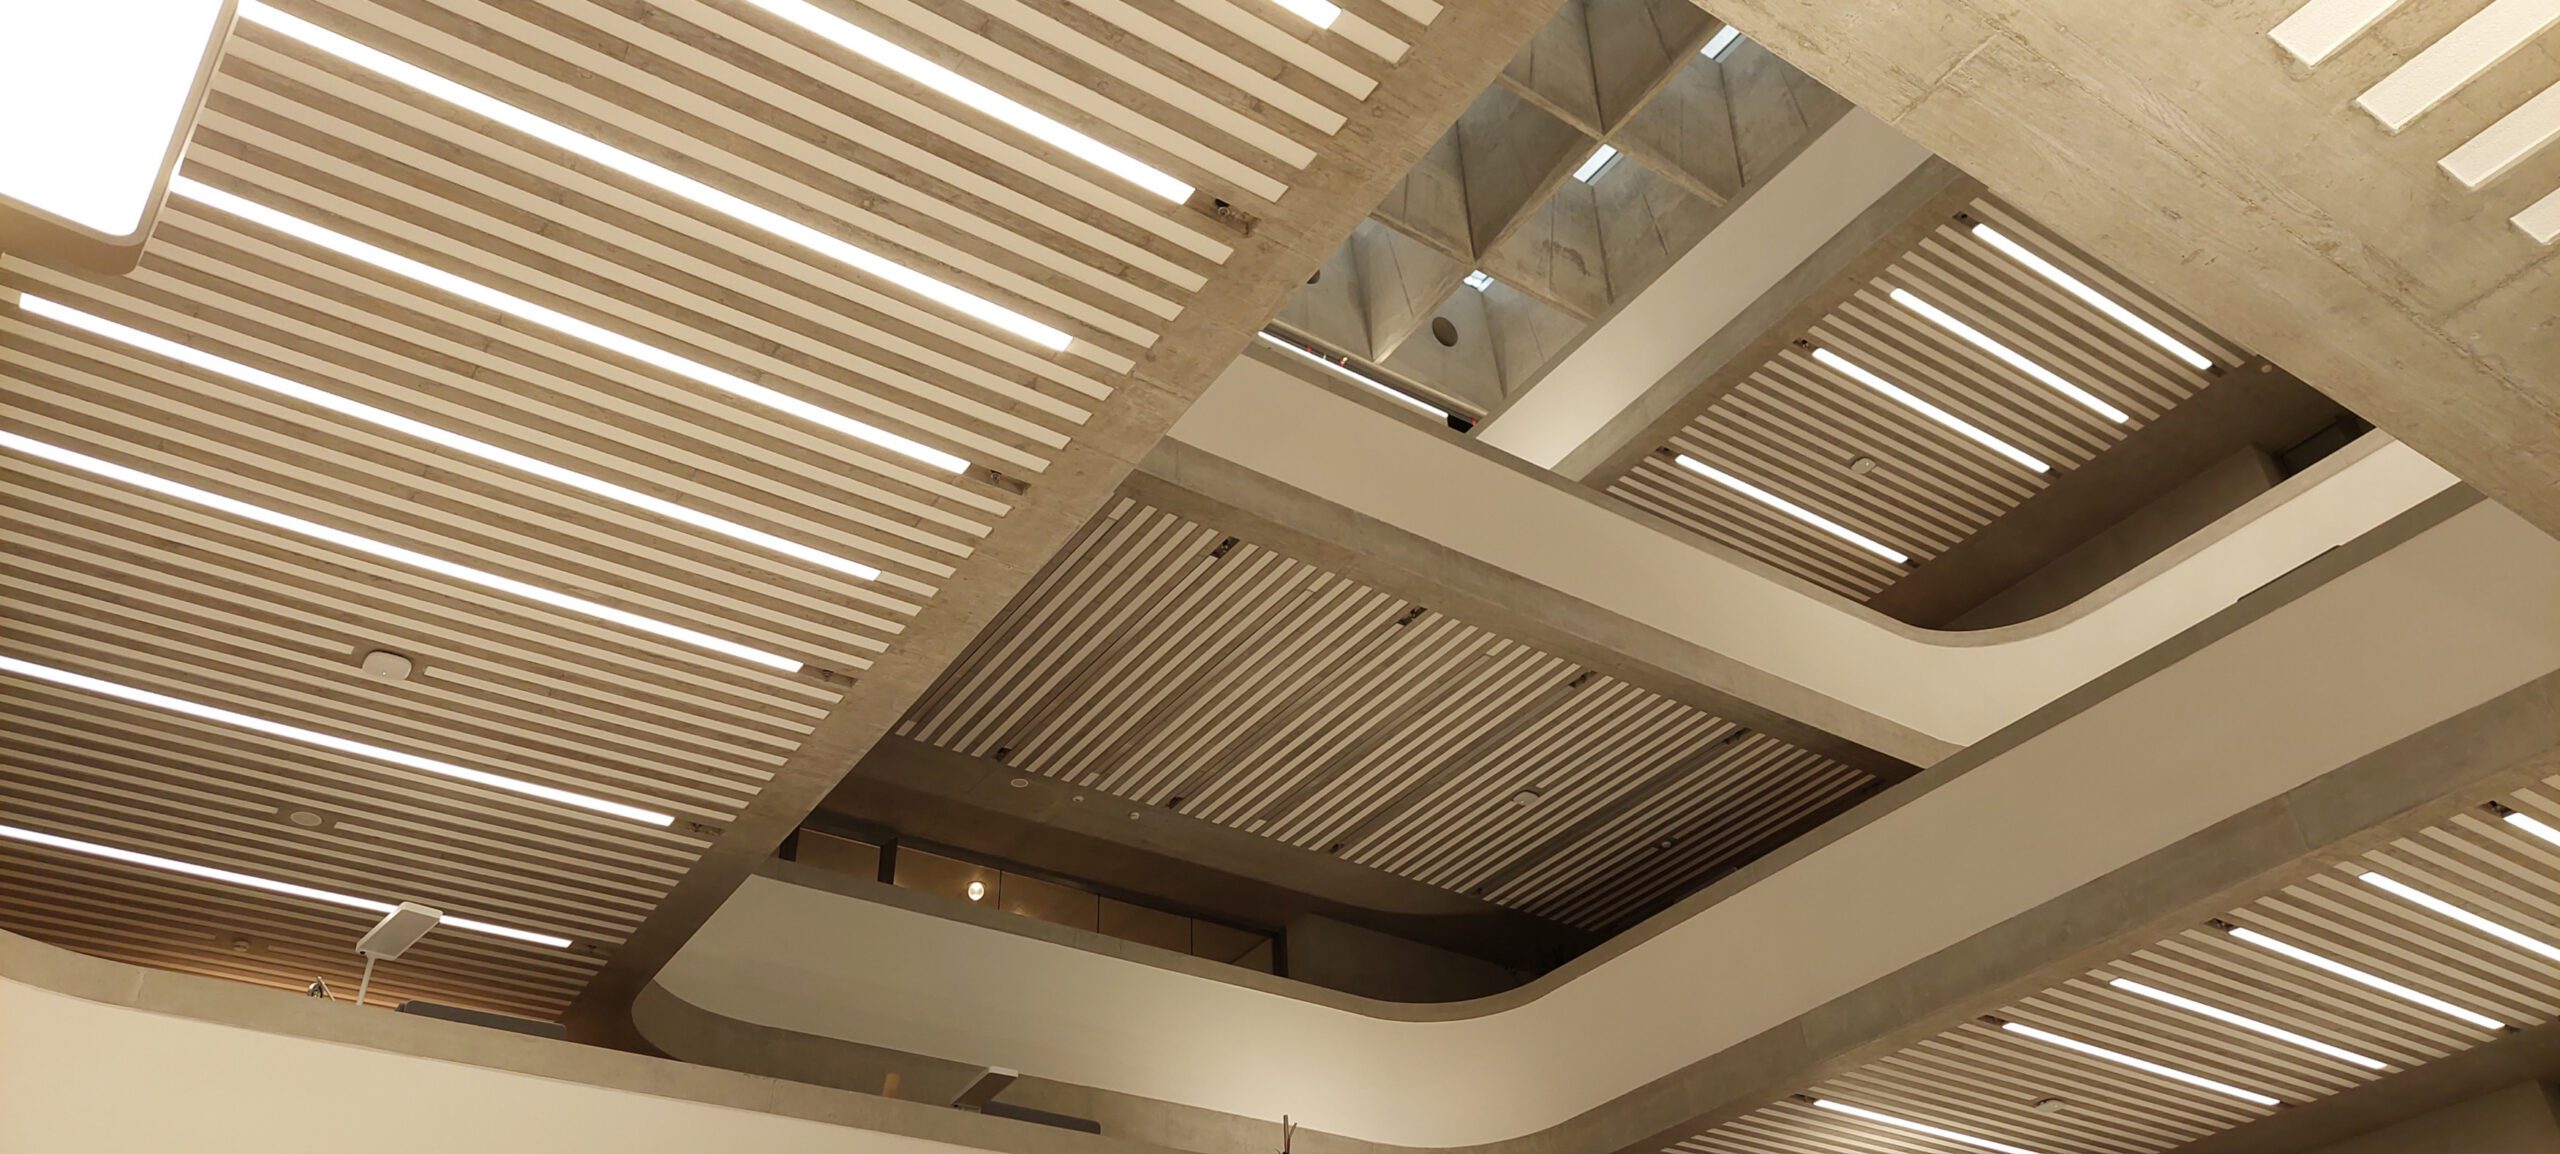 Neben den Akustik-Elementen sind auch Leuchten und Sprinkler in der Decke integriert (Foto: Sto SE & Co. KGaA)